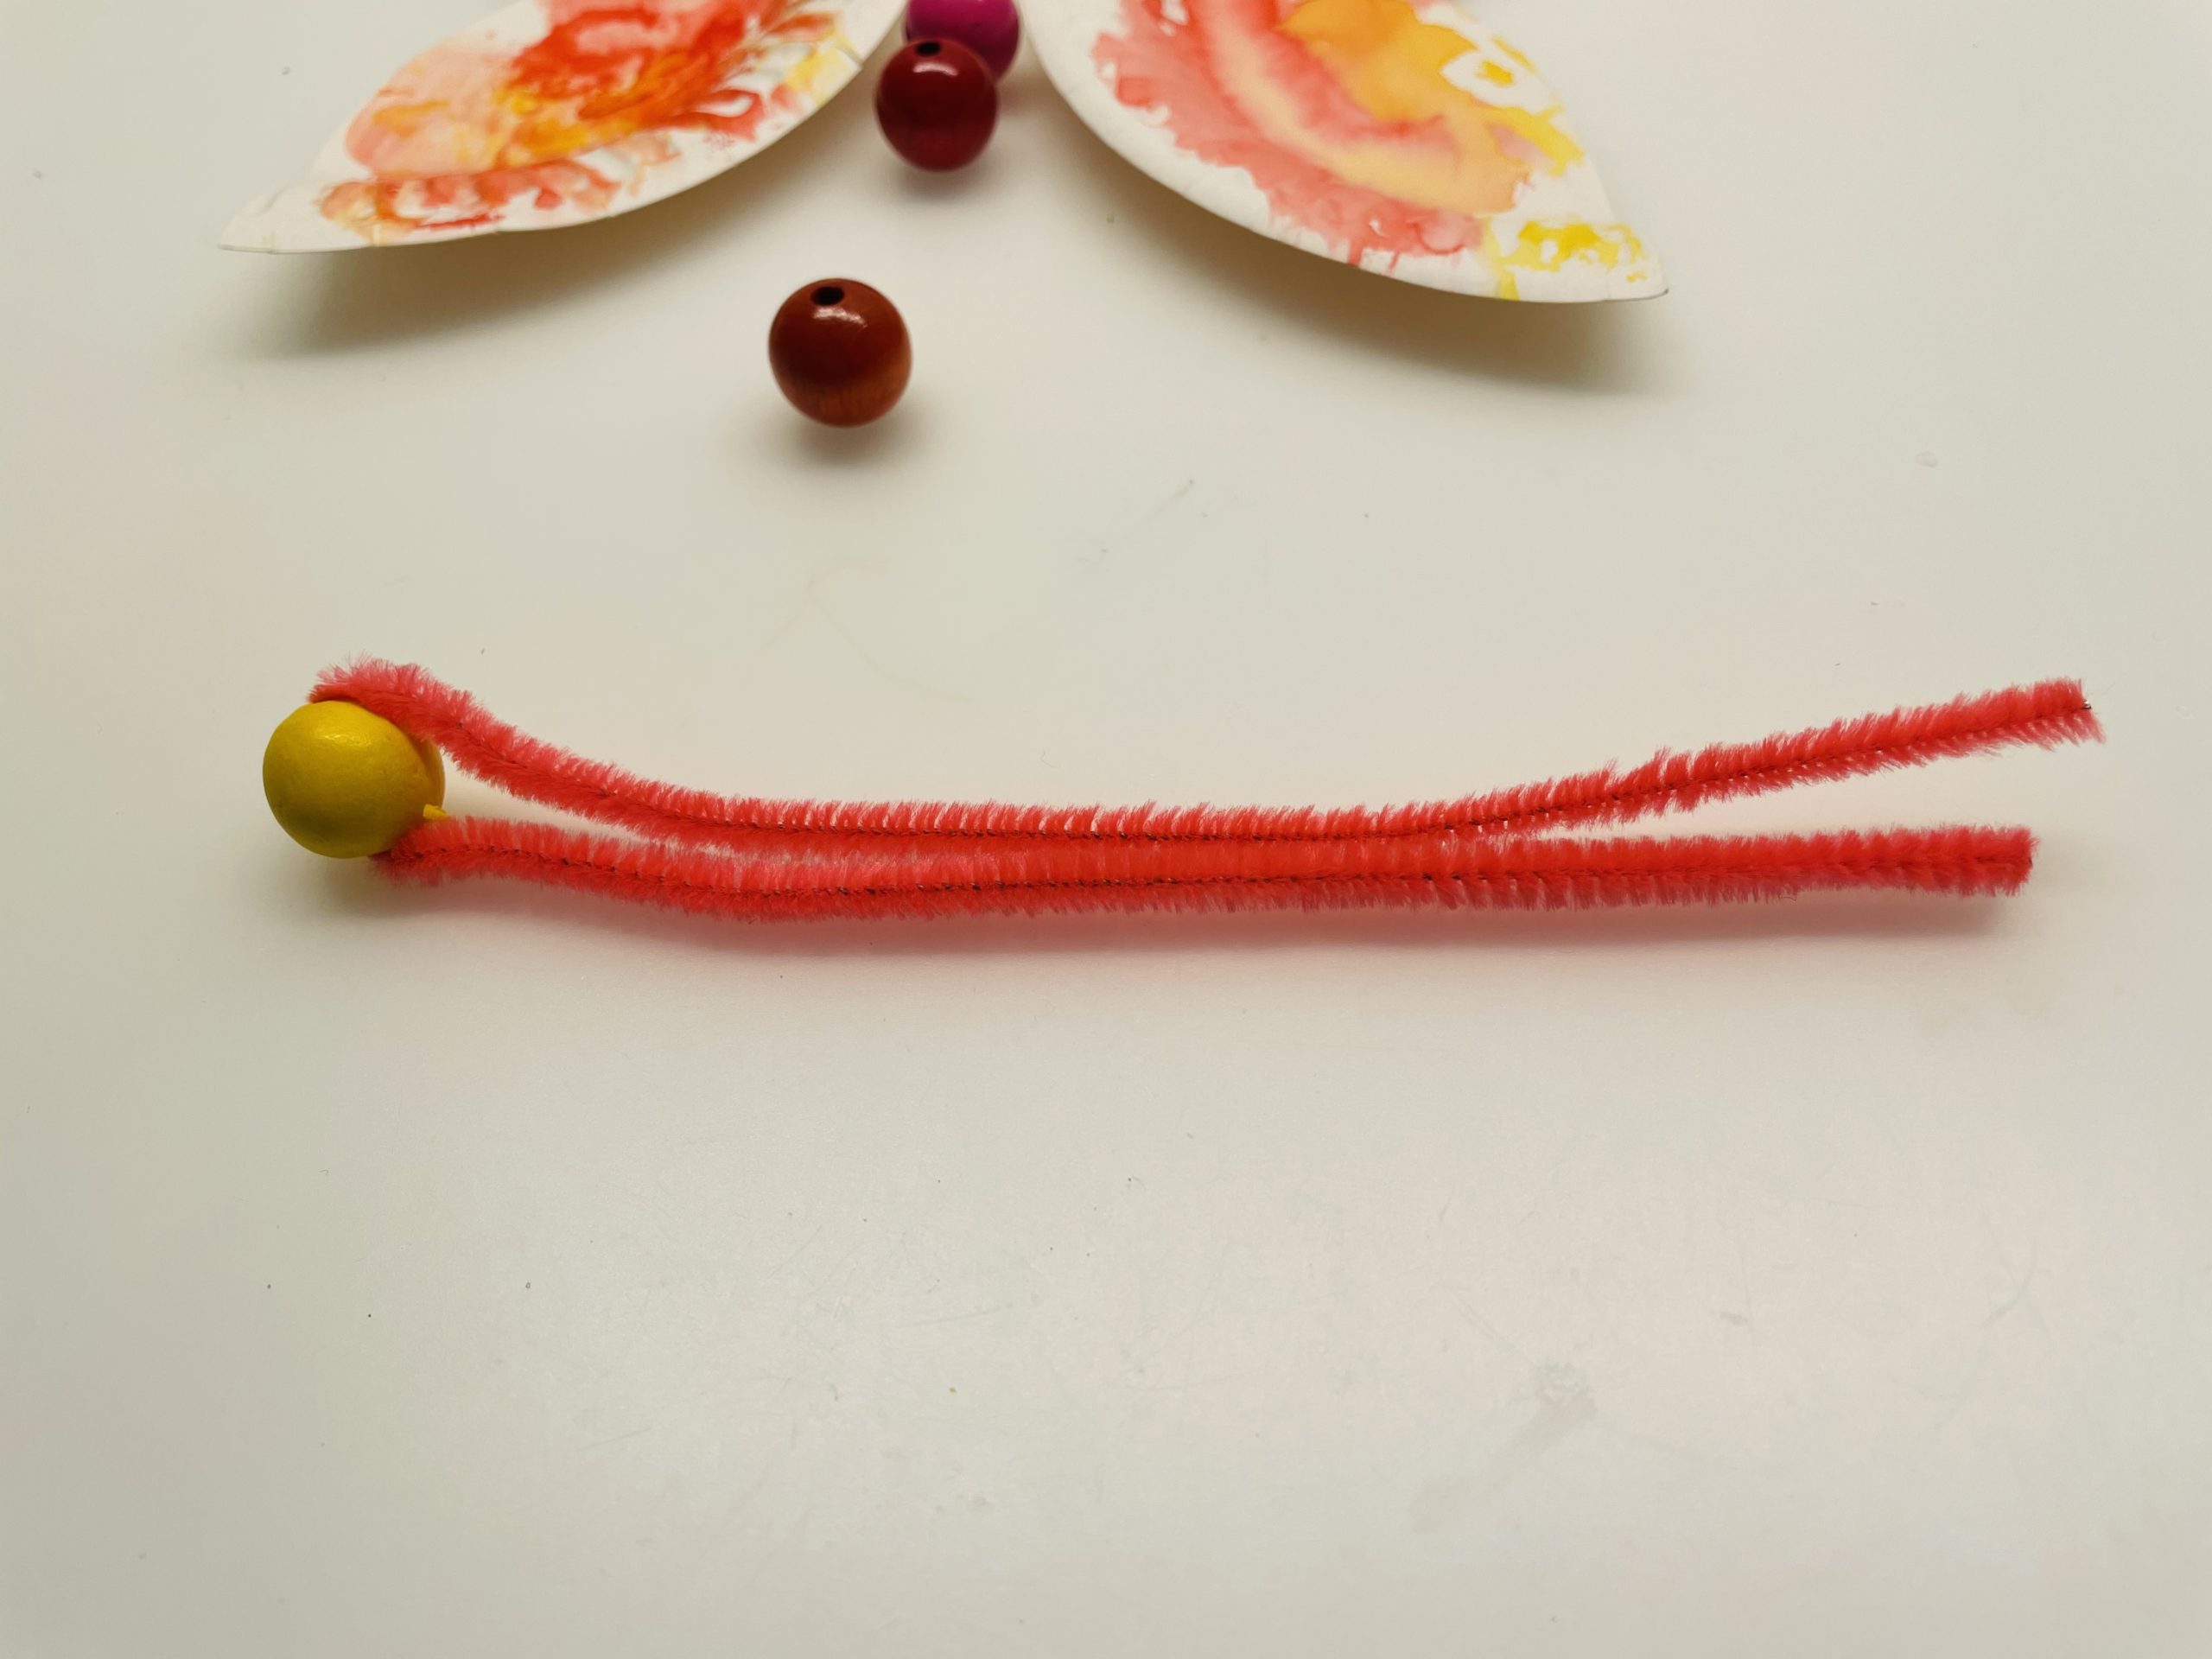 Bild zum Schritt 24 für das Bastel- und DIY-Abenteuer für Kinder: '[Eltern]Steckt zuerst eine Perle auf den Pfeifenputzer und schiebt sie...'